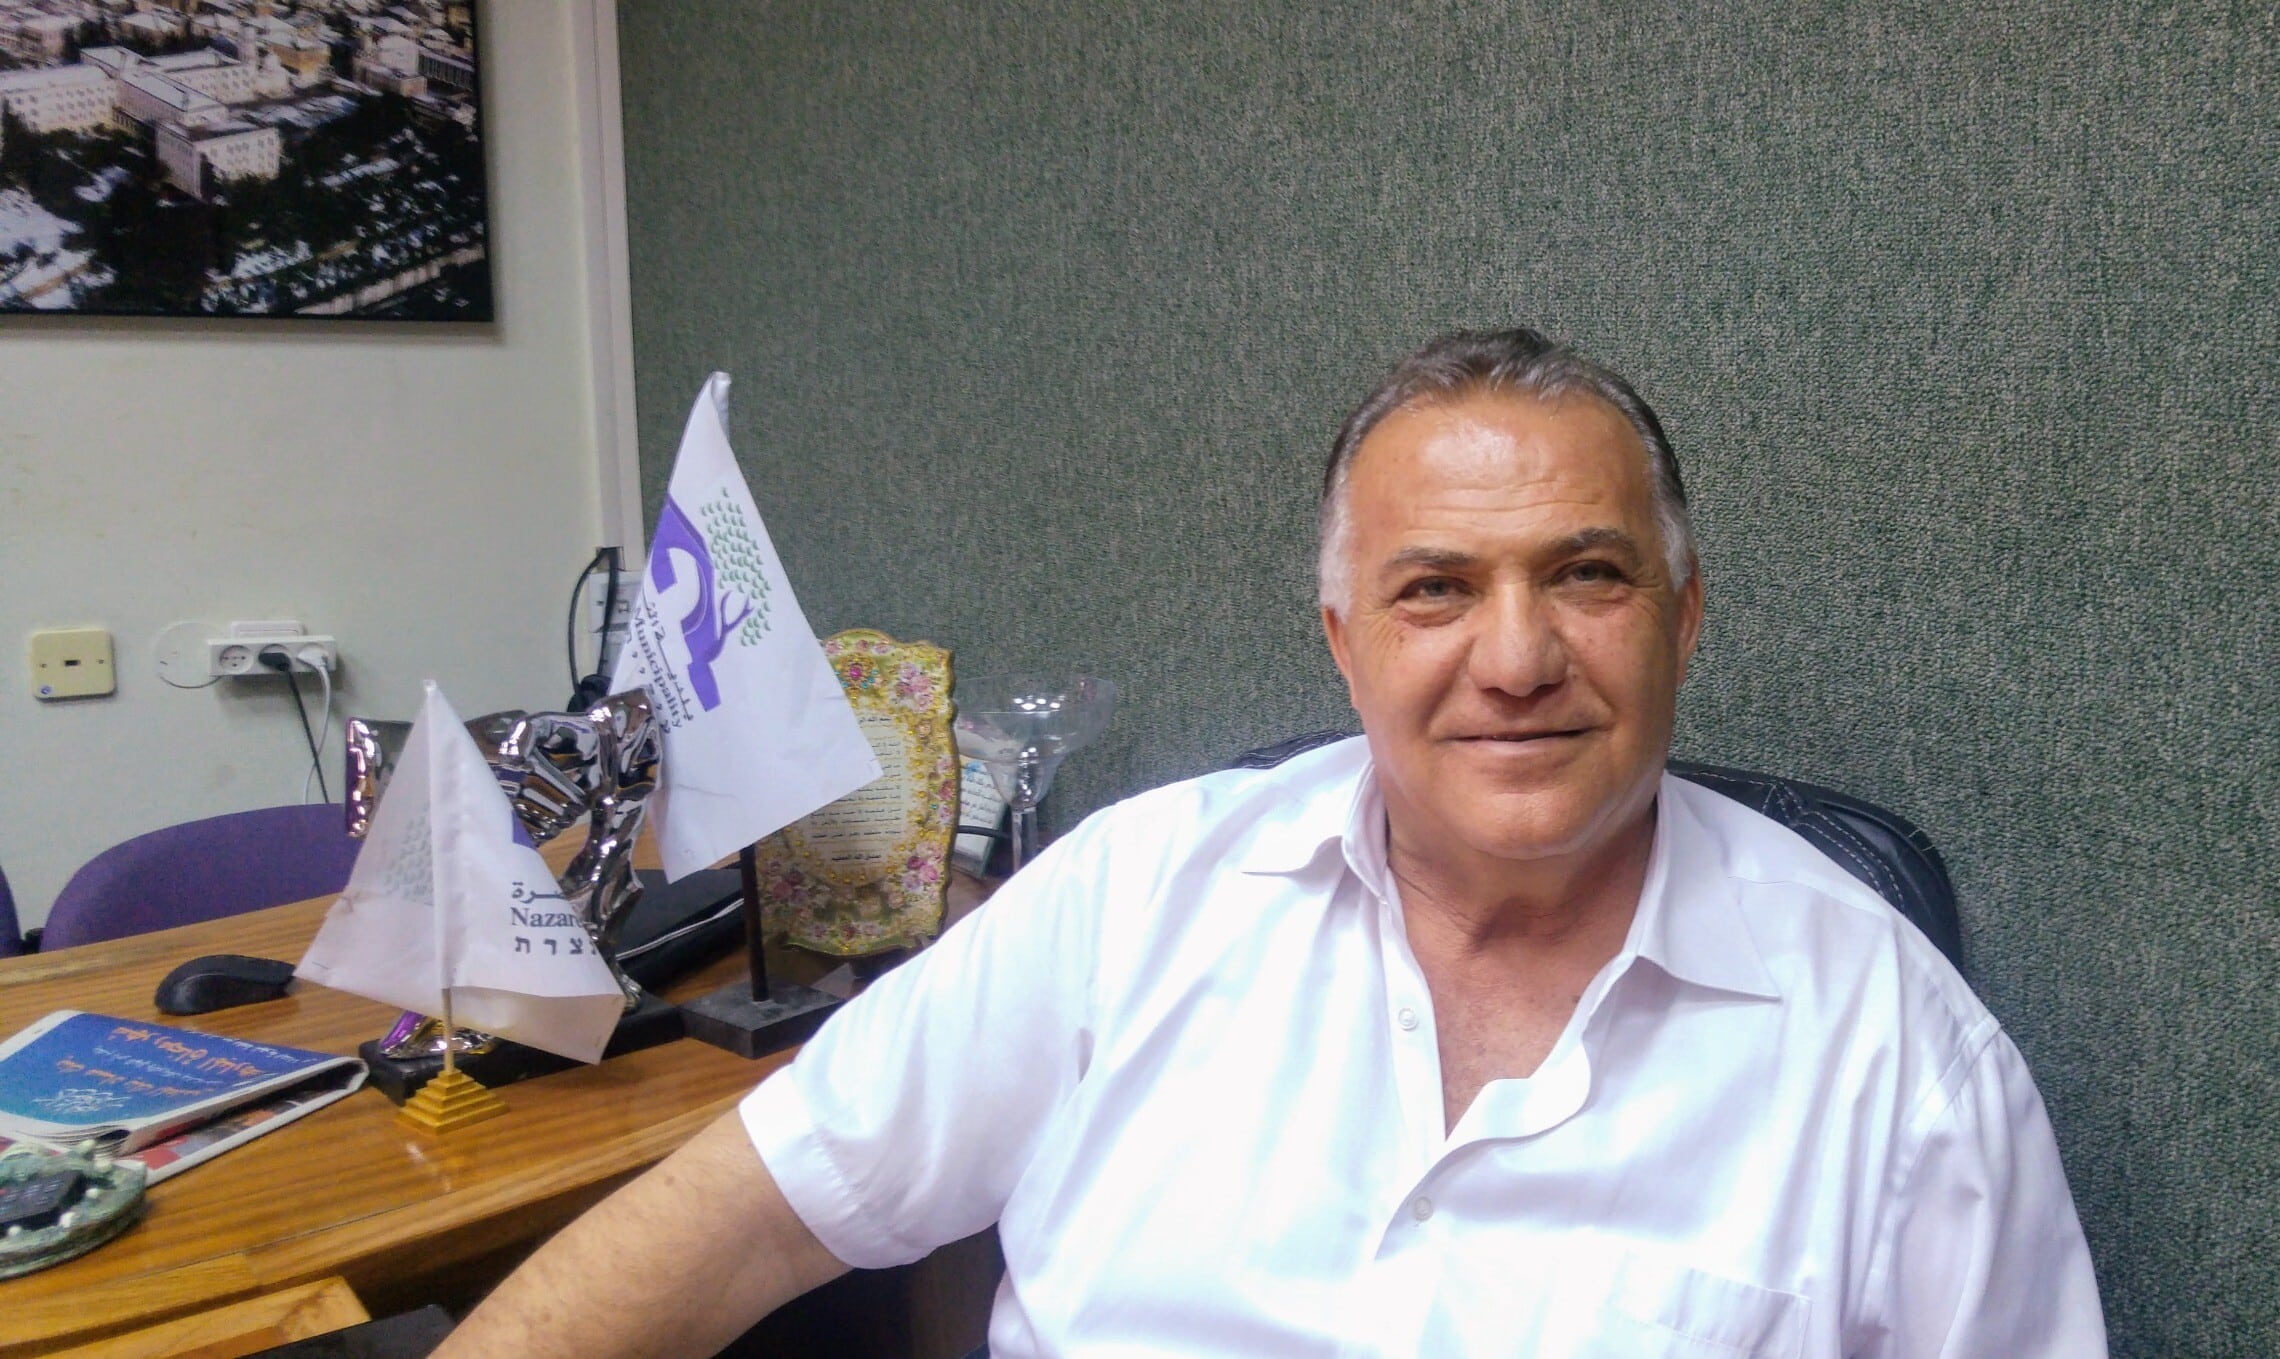 עלי סלאם, ראש עיריית נצרת בלשכתו בעיר, יוני 2017 (צילום: Laliv gal, ויקיפדיה)